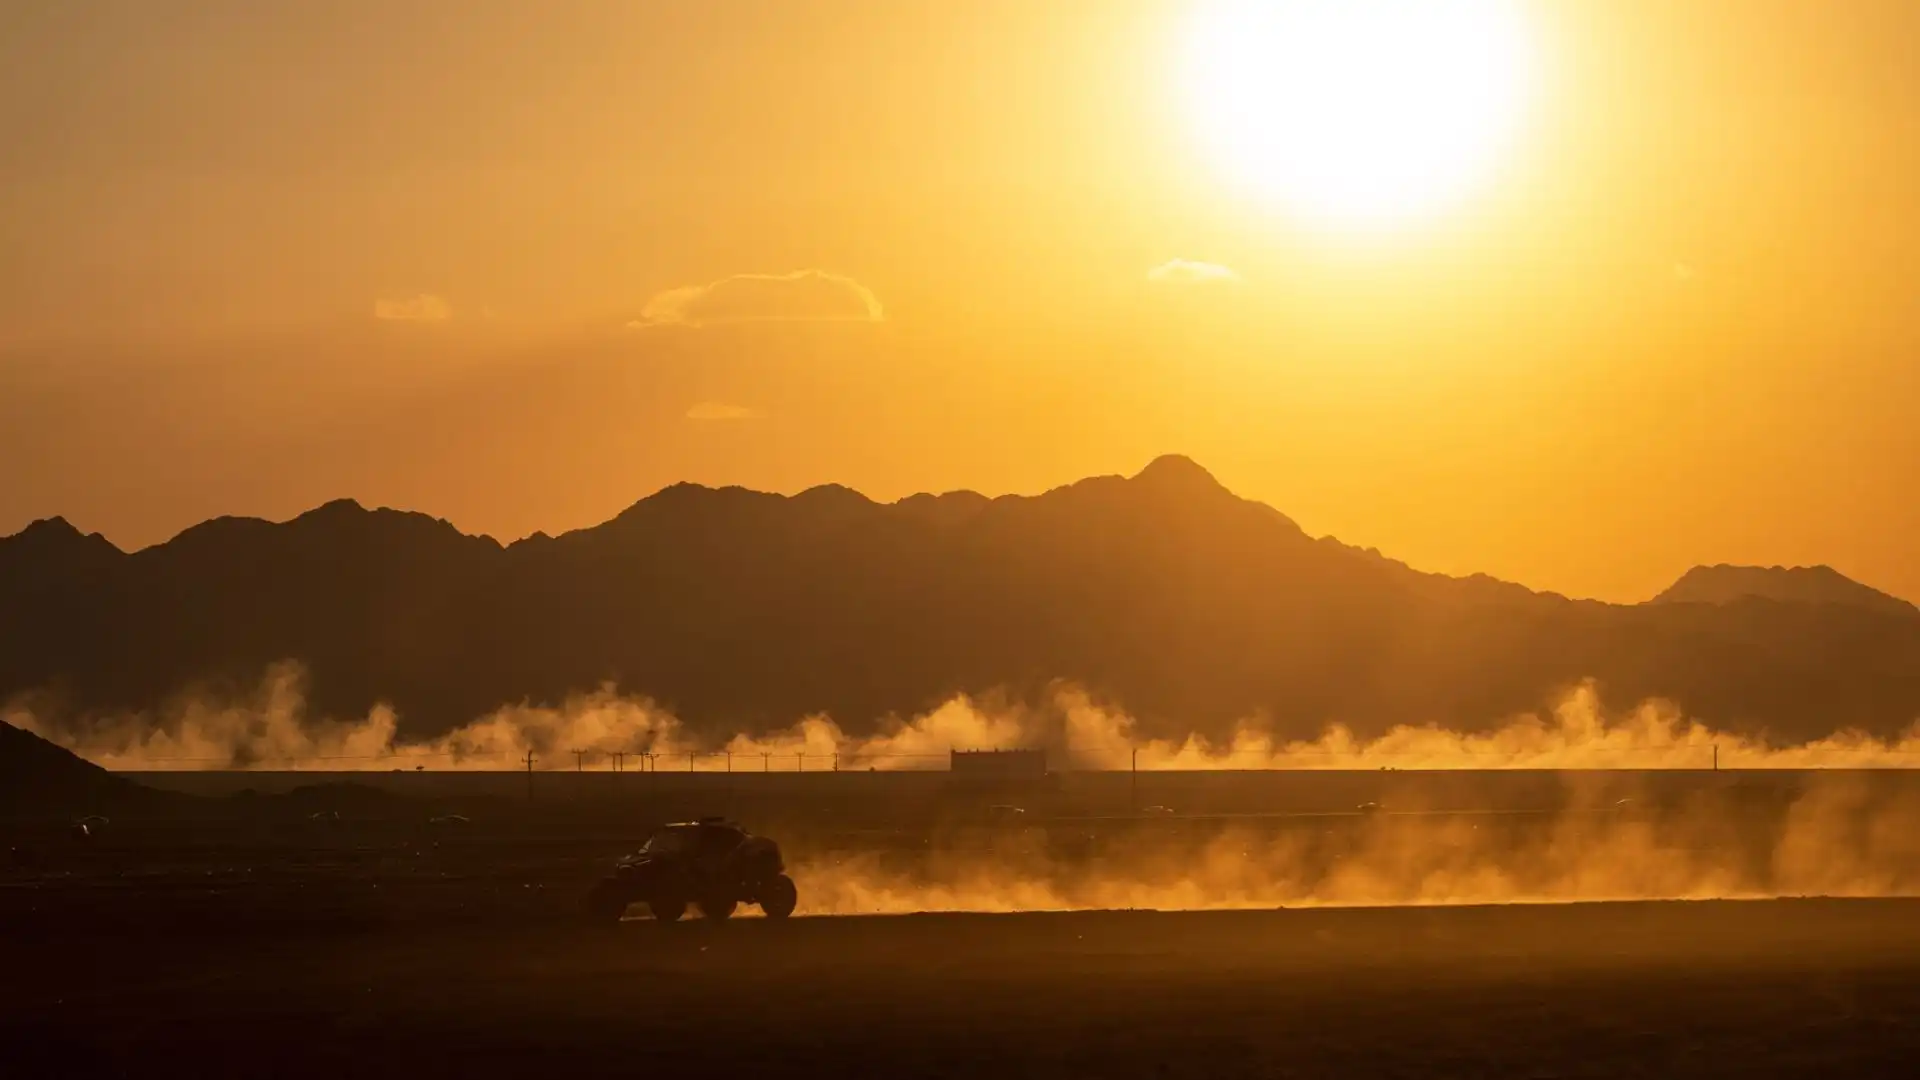 La celebre corsa di Rally ha preso il via in Arabia Saudita, con un panorama da brividi